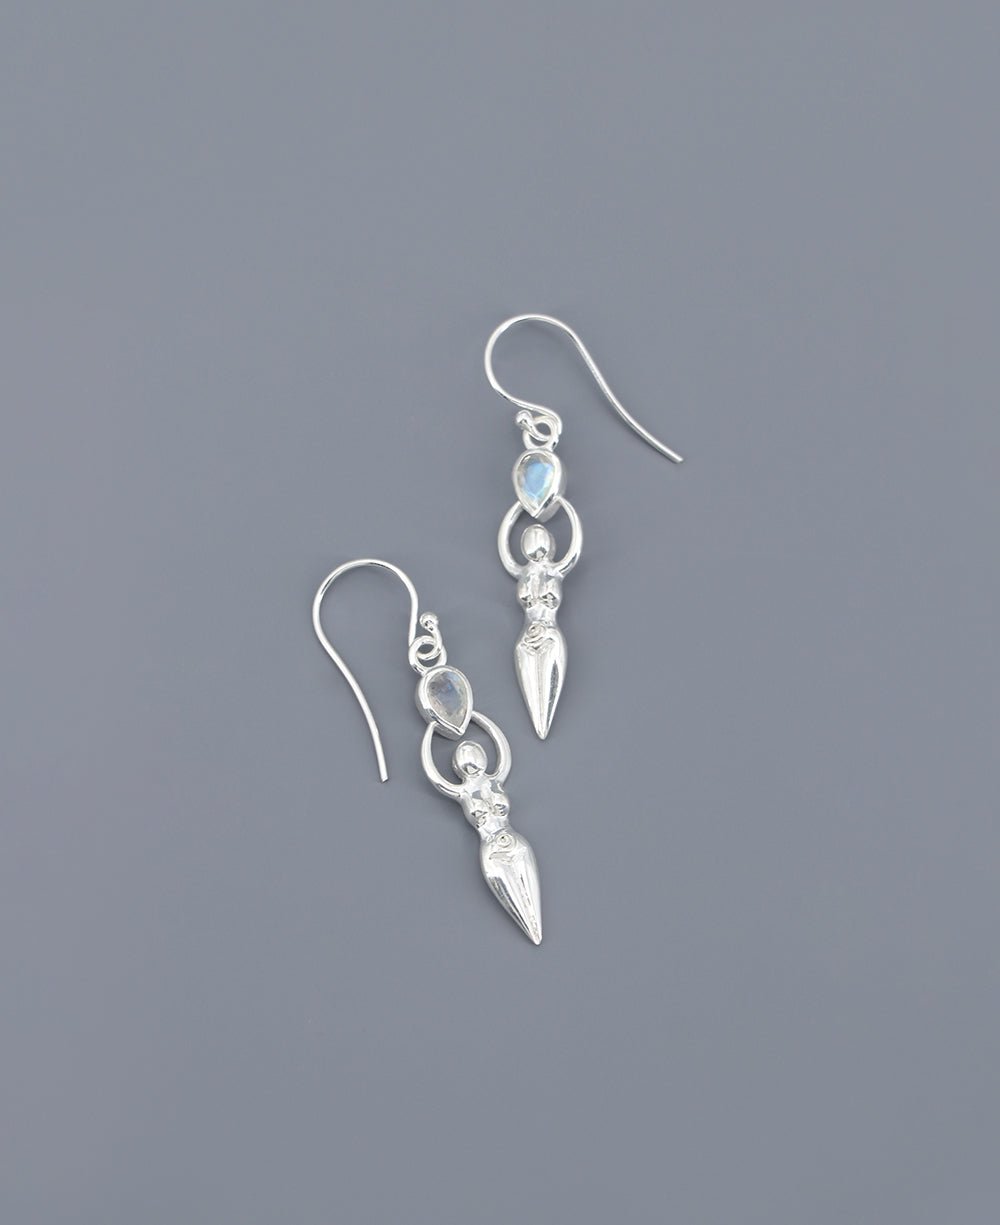 Sacred Feminine Goddess Earrings in Sterling Silver With Moonstone - Earrings